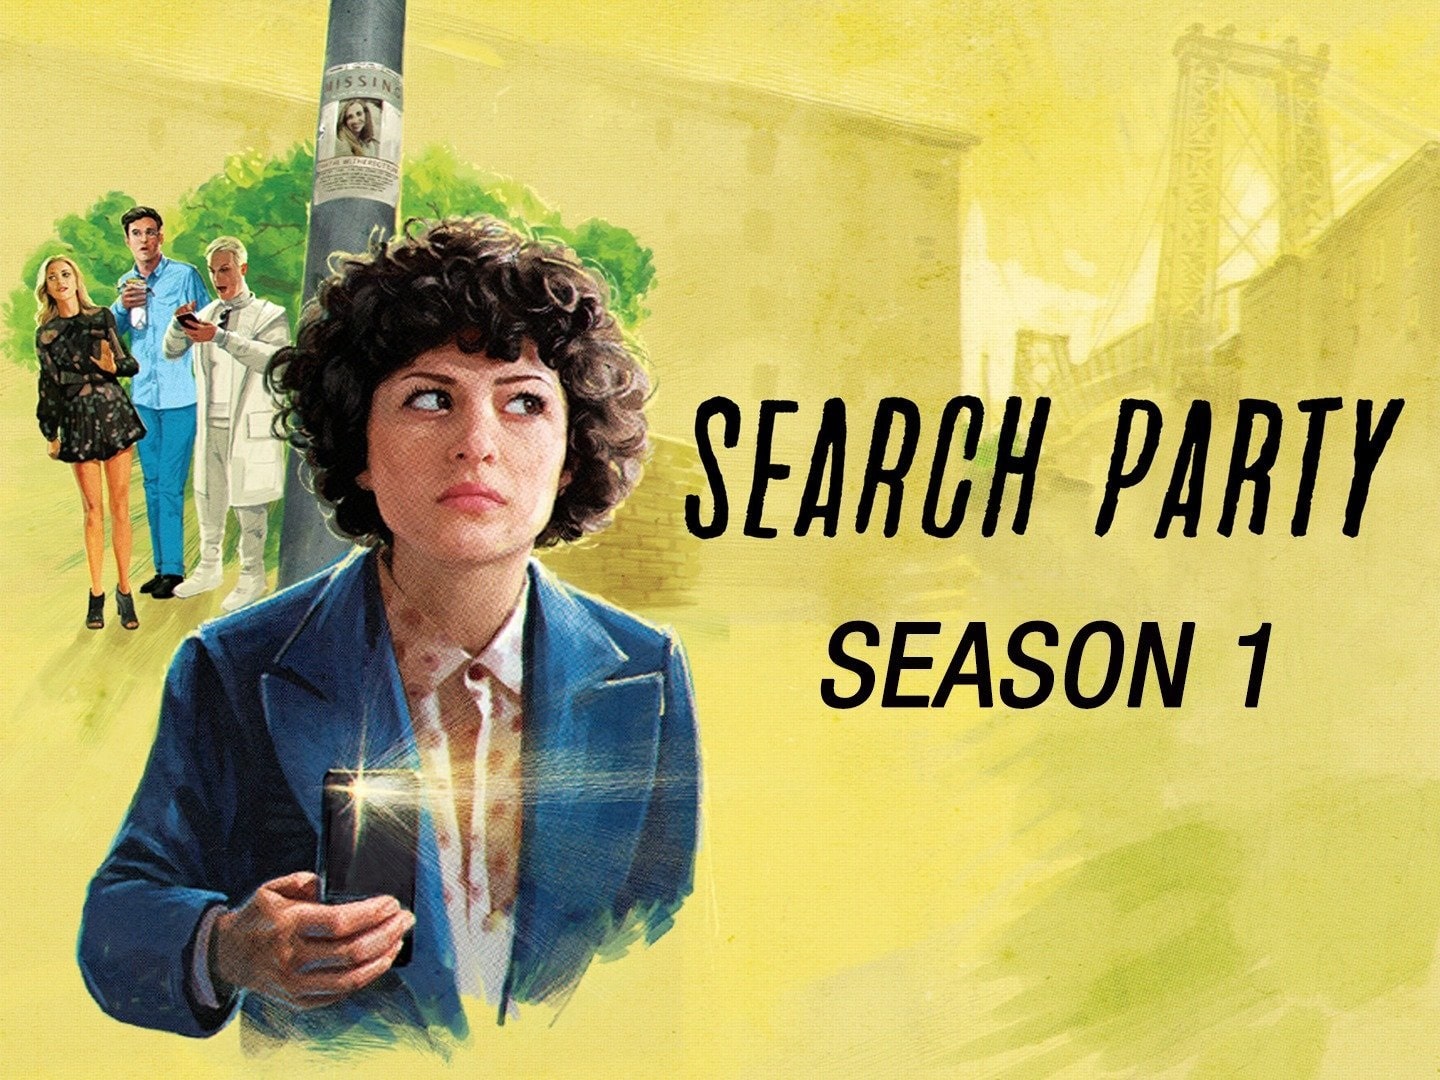 Search Party - Season 1